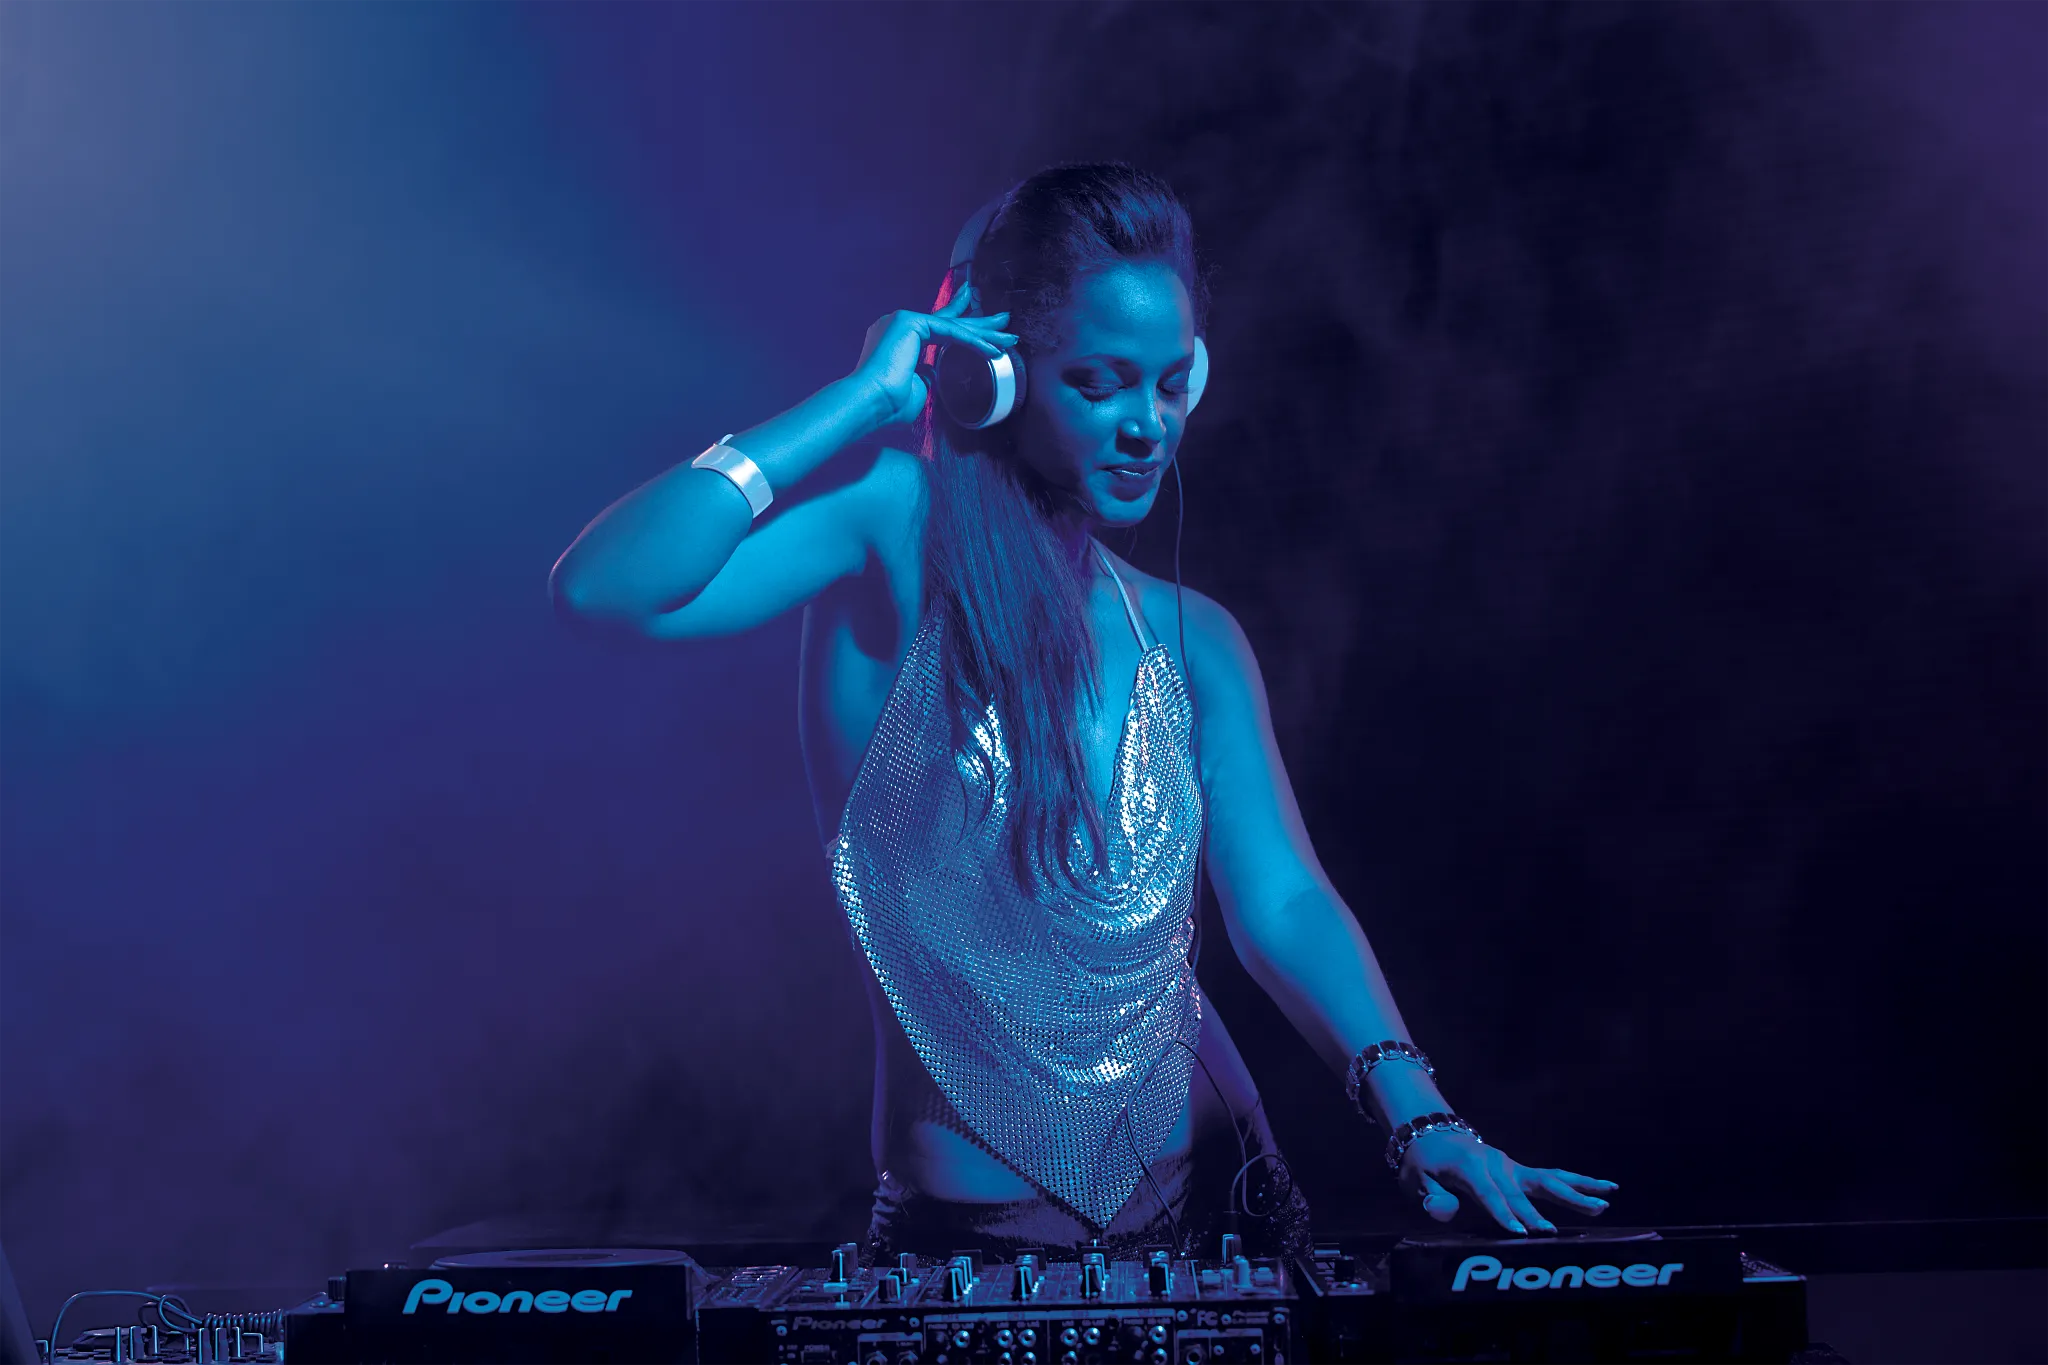 Woman DJ at a nightclub